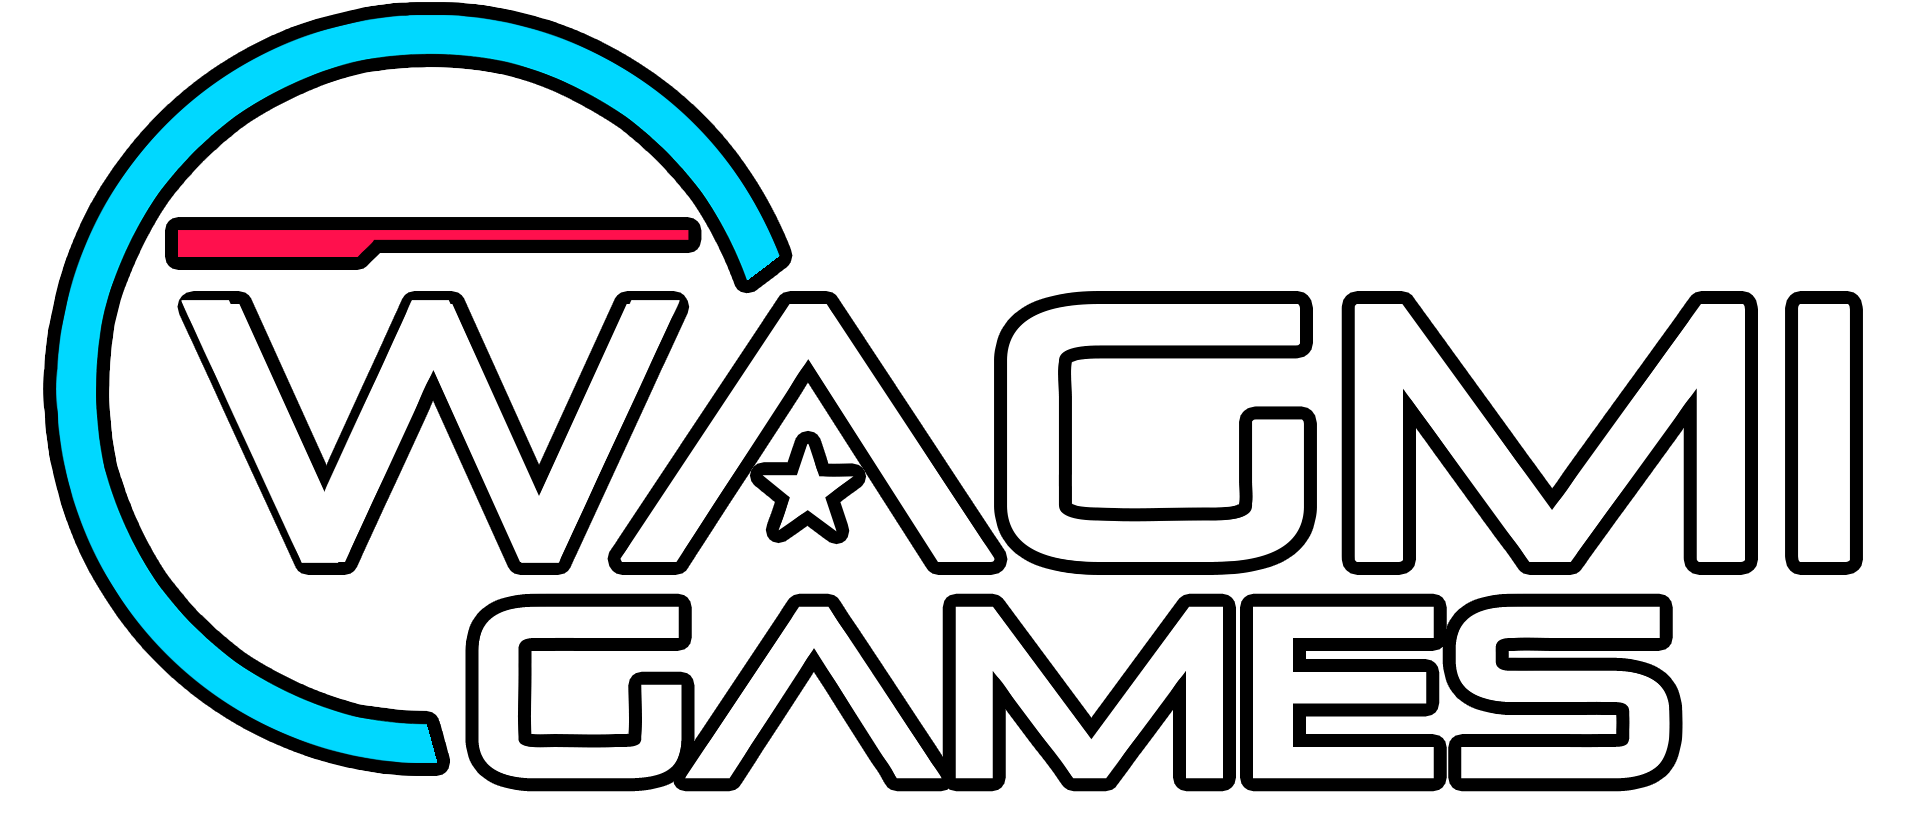 WAGMI Games